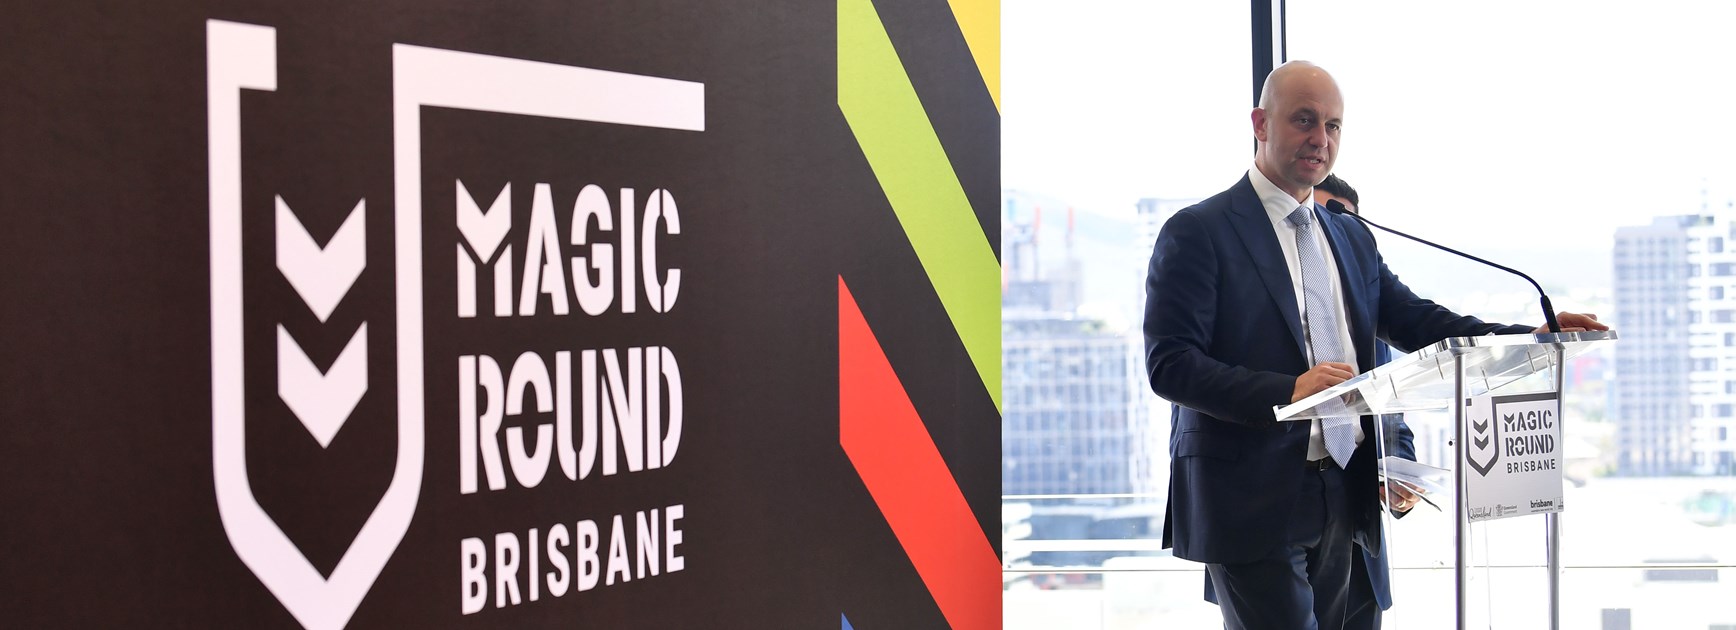 2019 Magic Round Brisbane tickets now on sale!